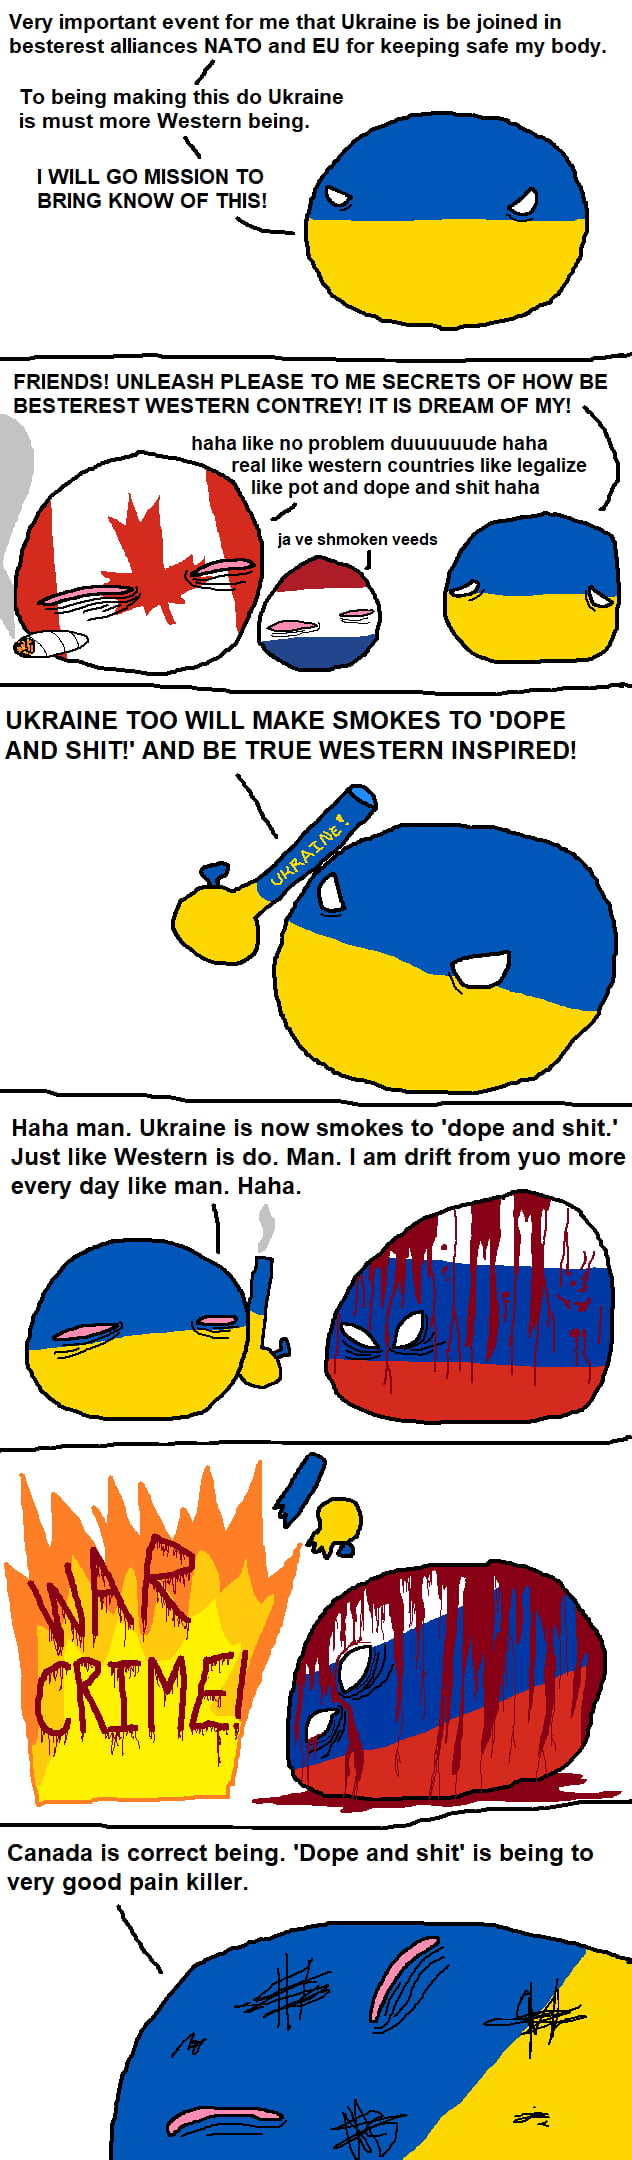 Ukraine legalizes dope !